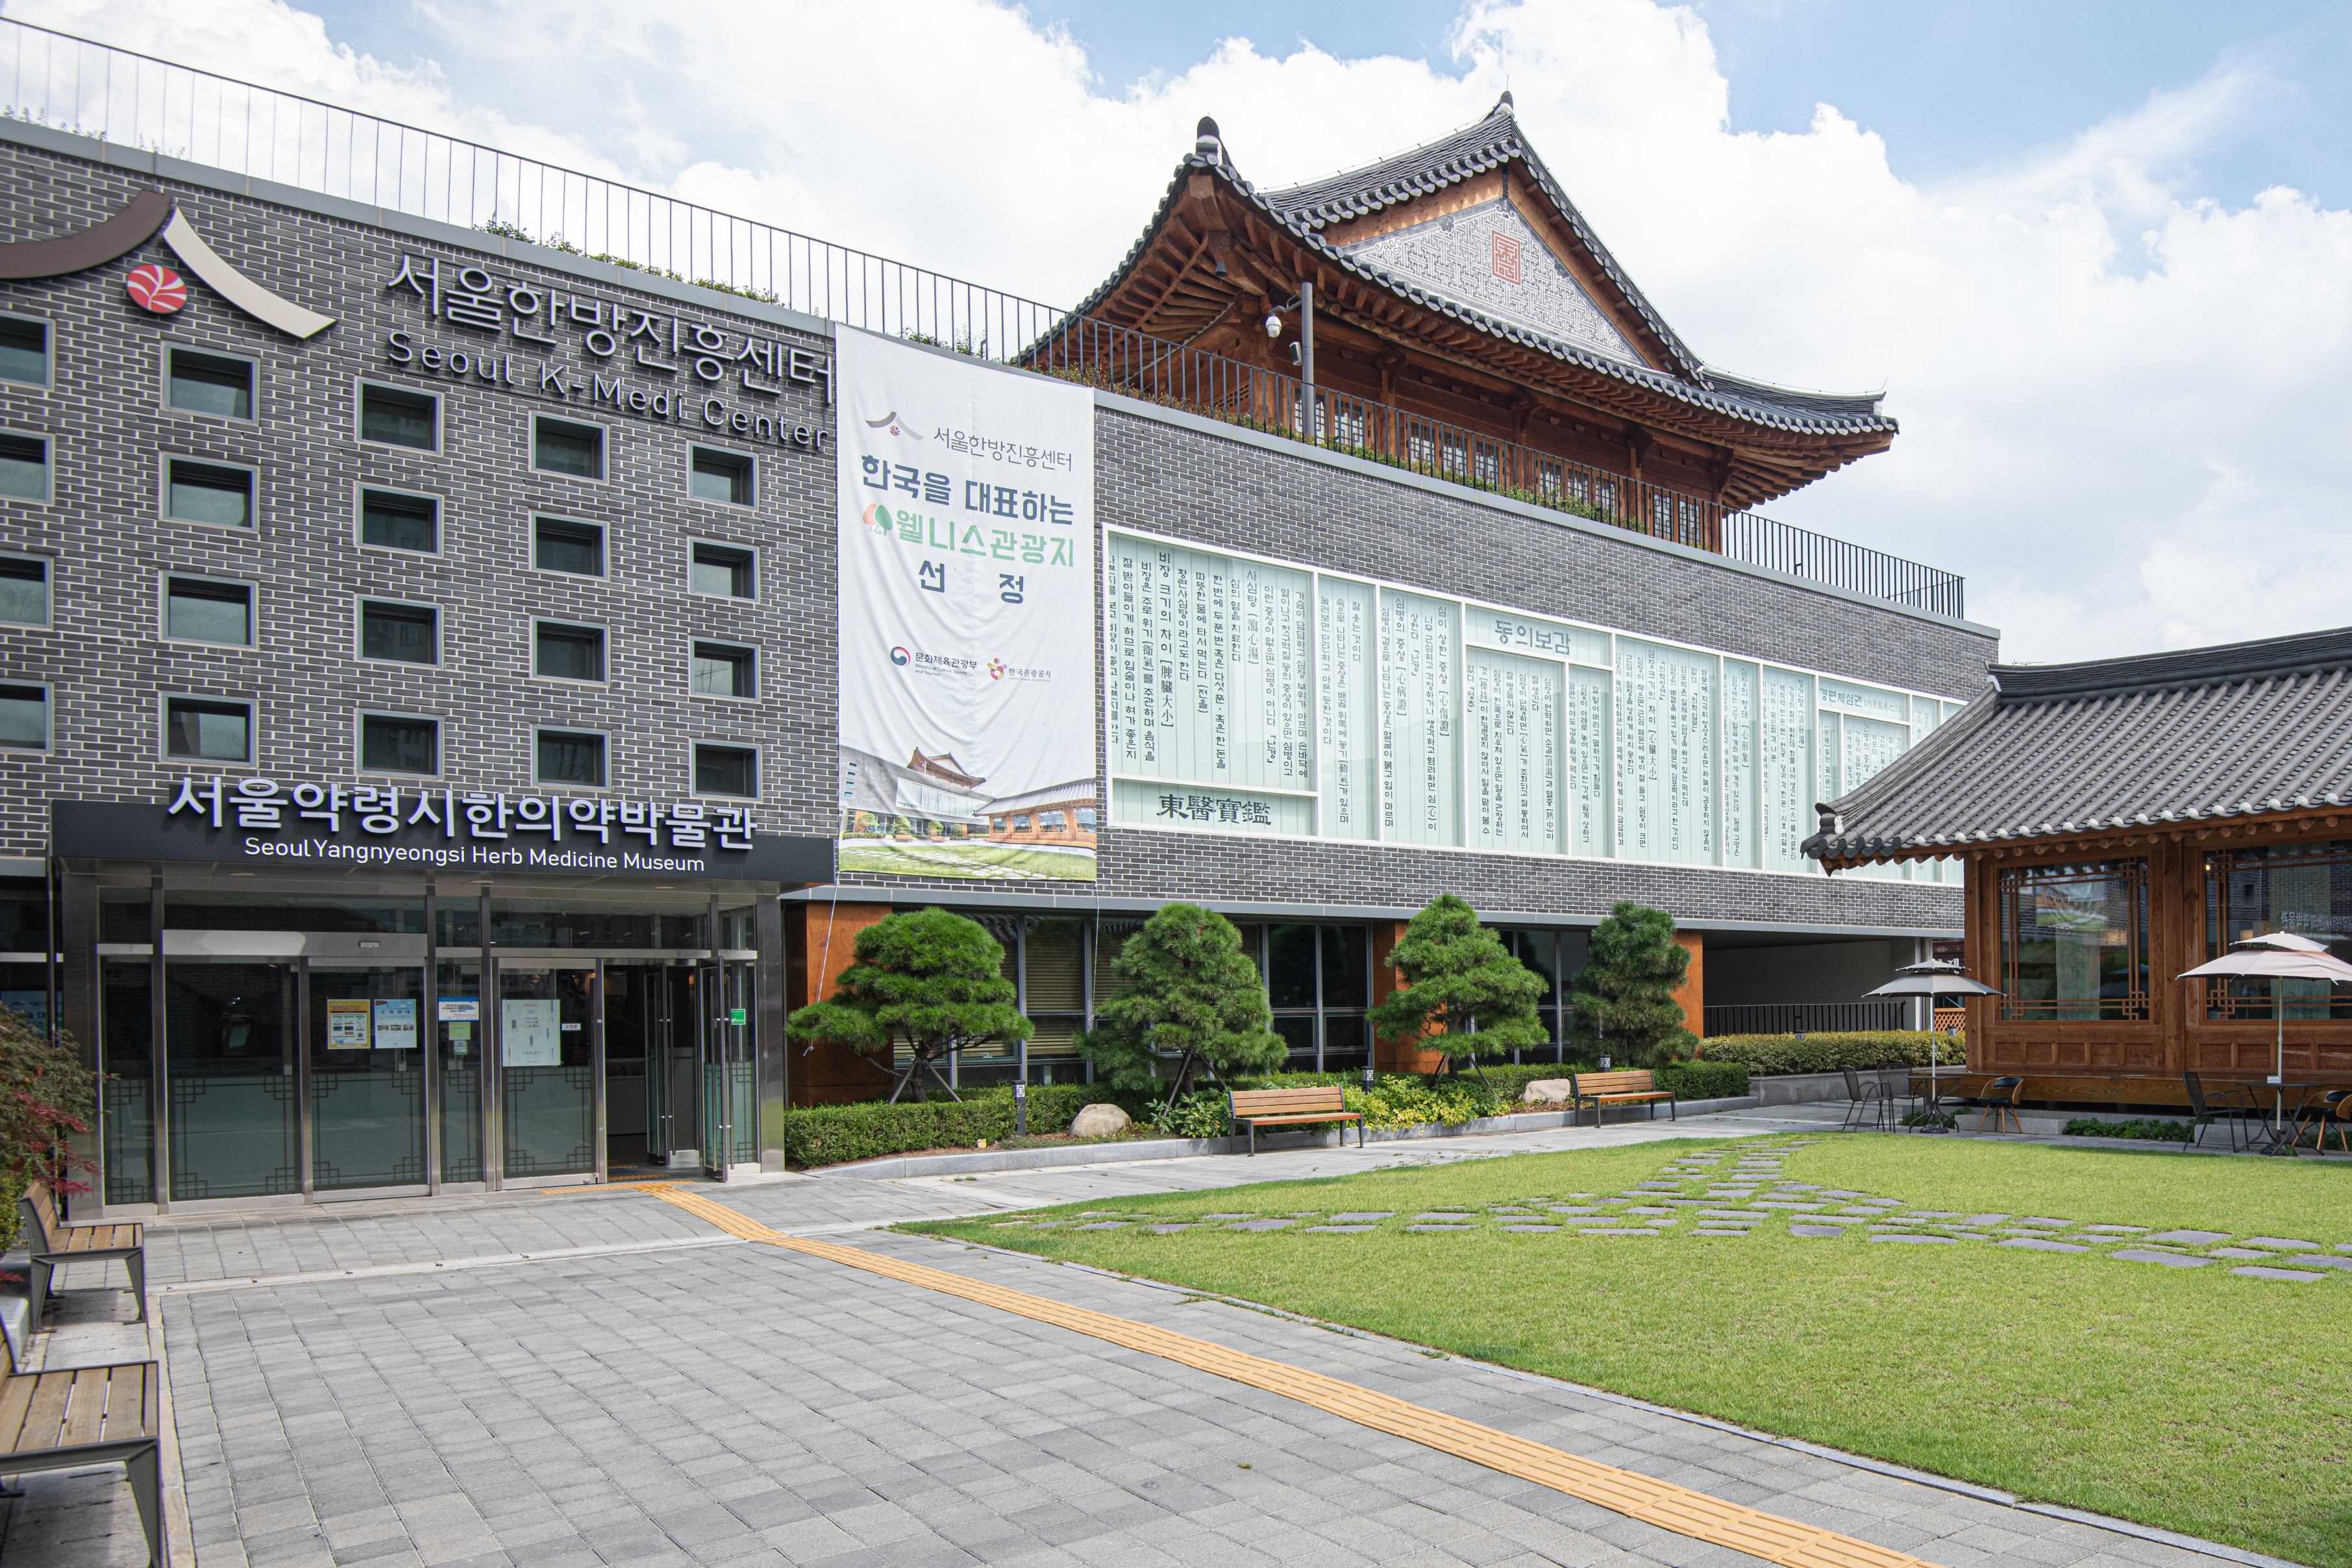 서울한방진흥센터0 : 전통 건축미가 있는 서울한방진흥센터 외부 전경
